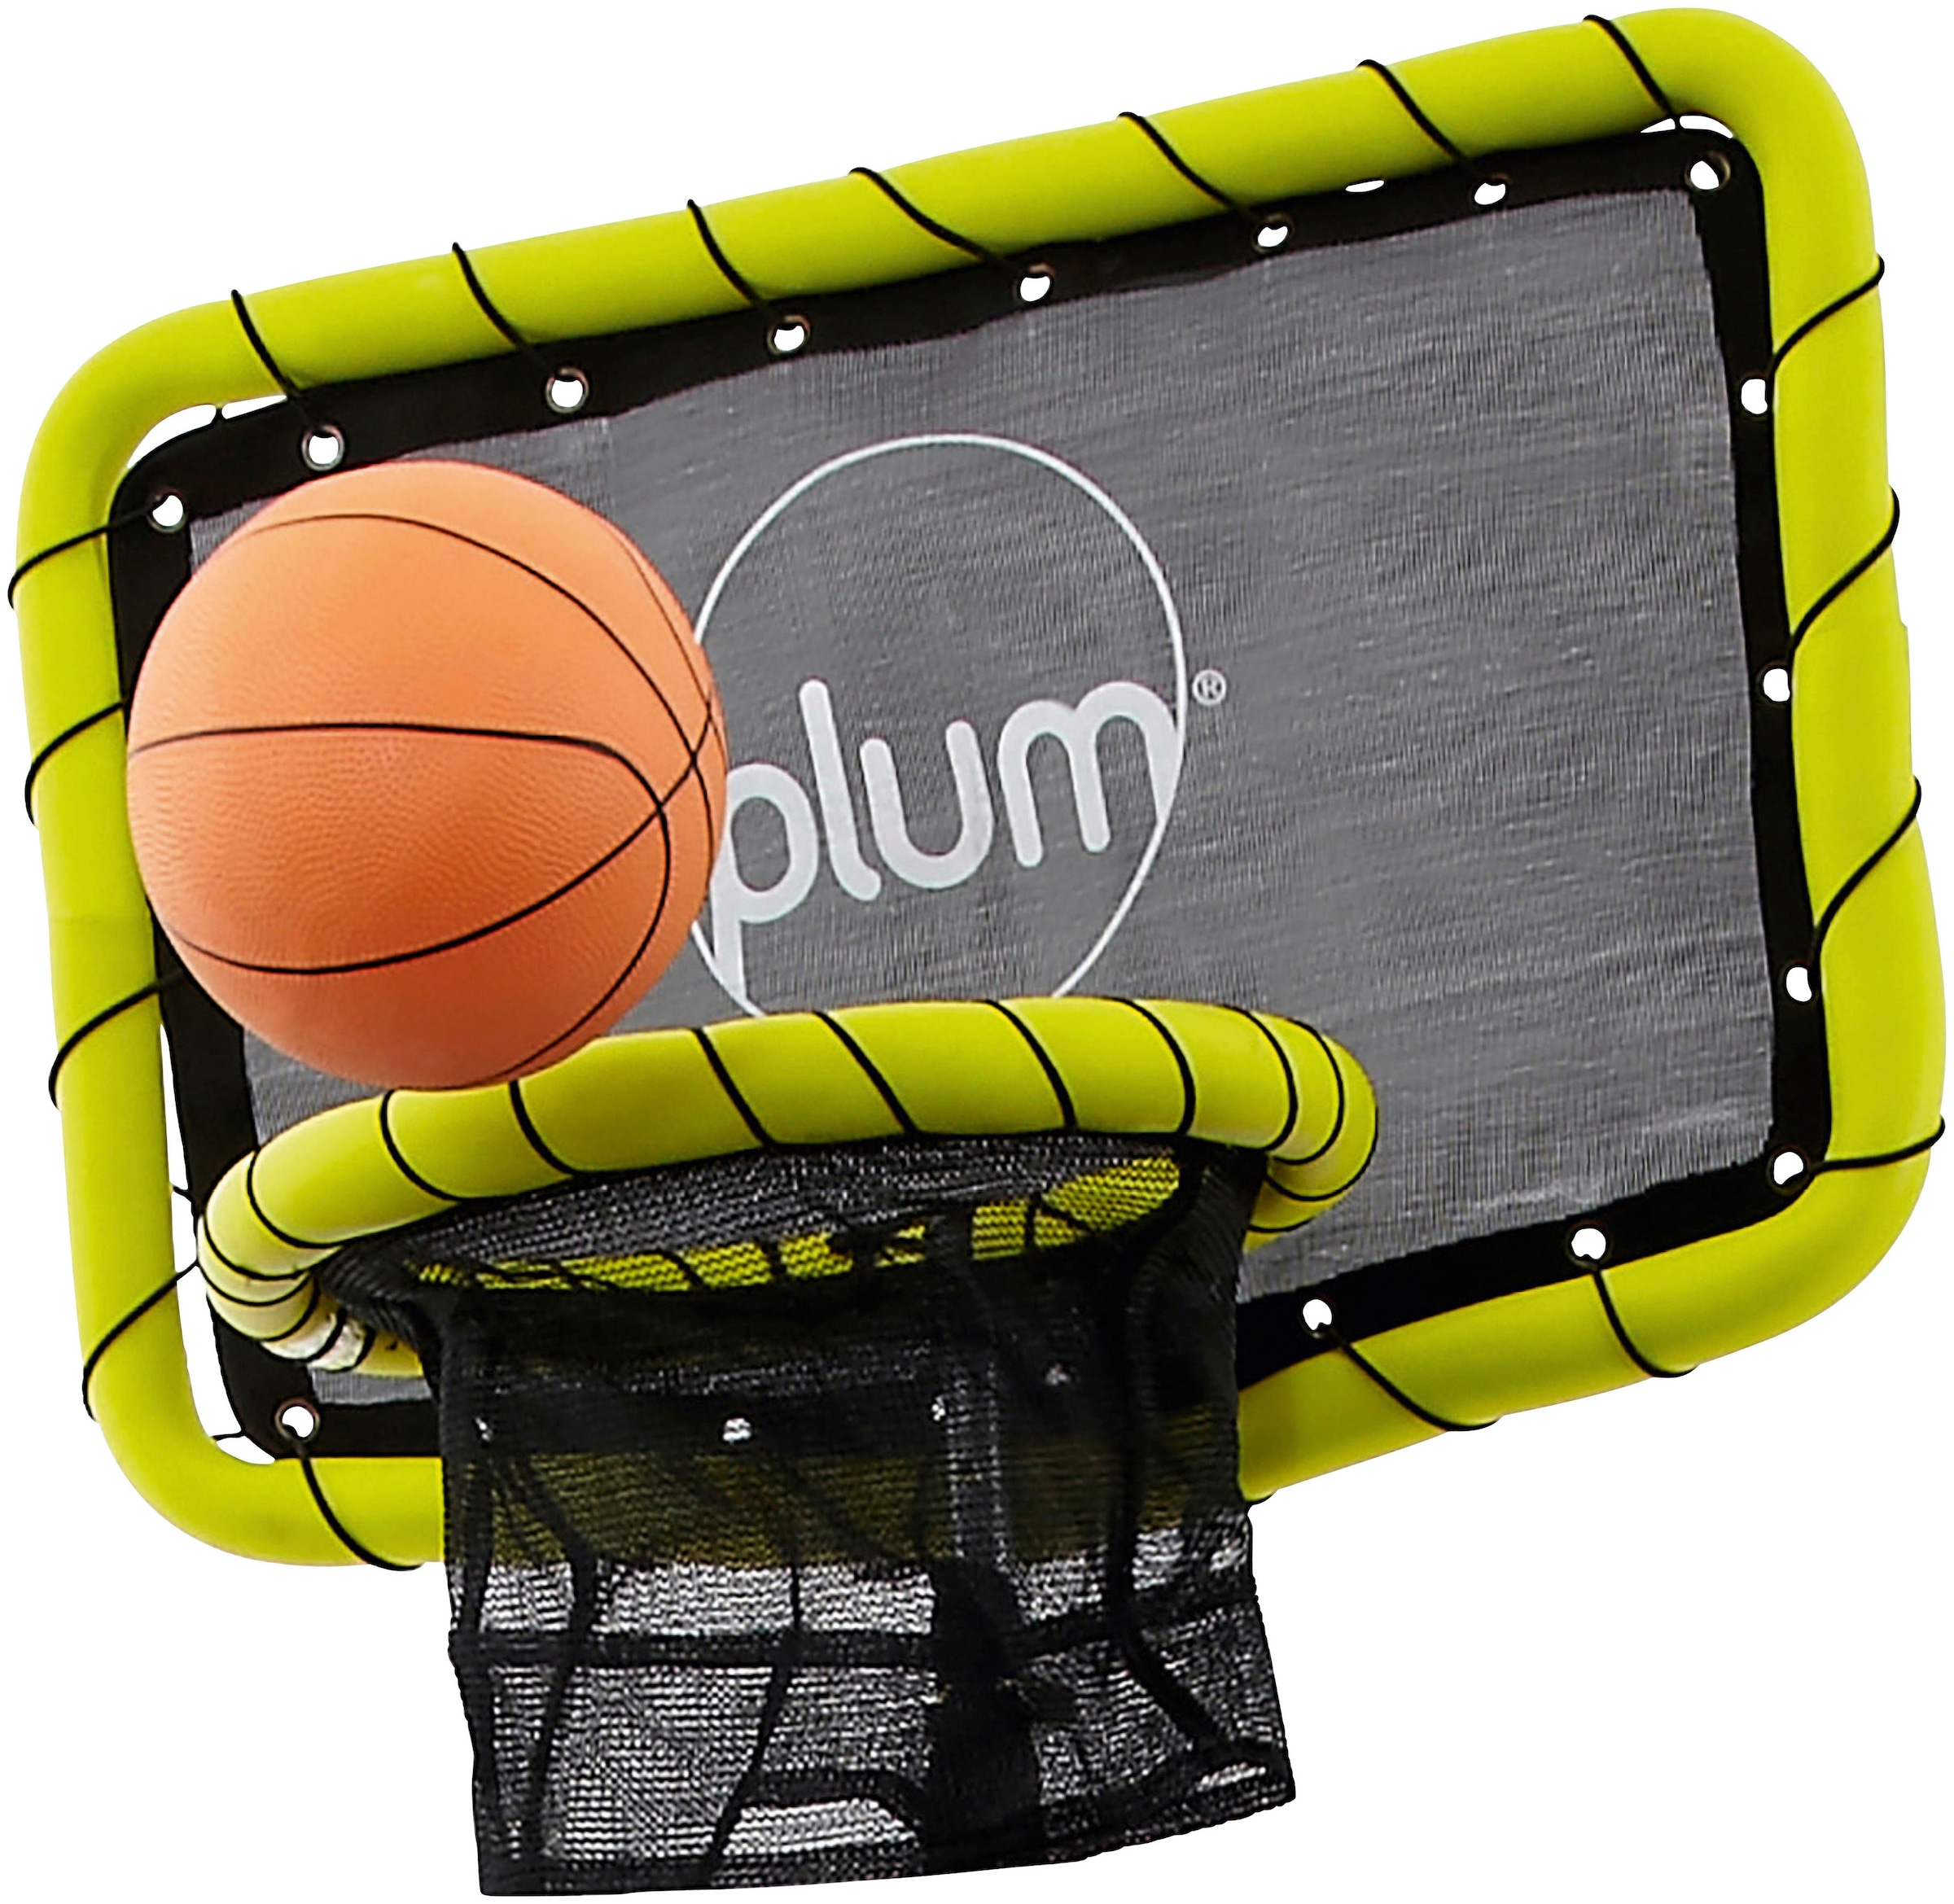 Basketballkorb, (Set), für Trampoline mit Sicherheitsnetz, 244-426 cm Durchmesser